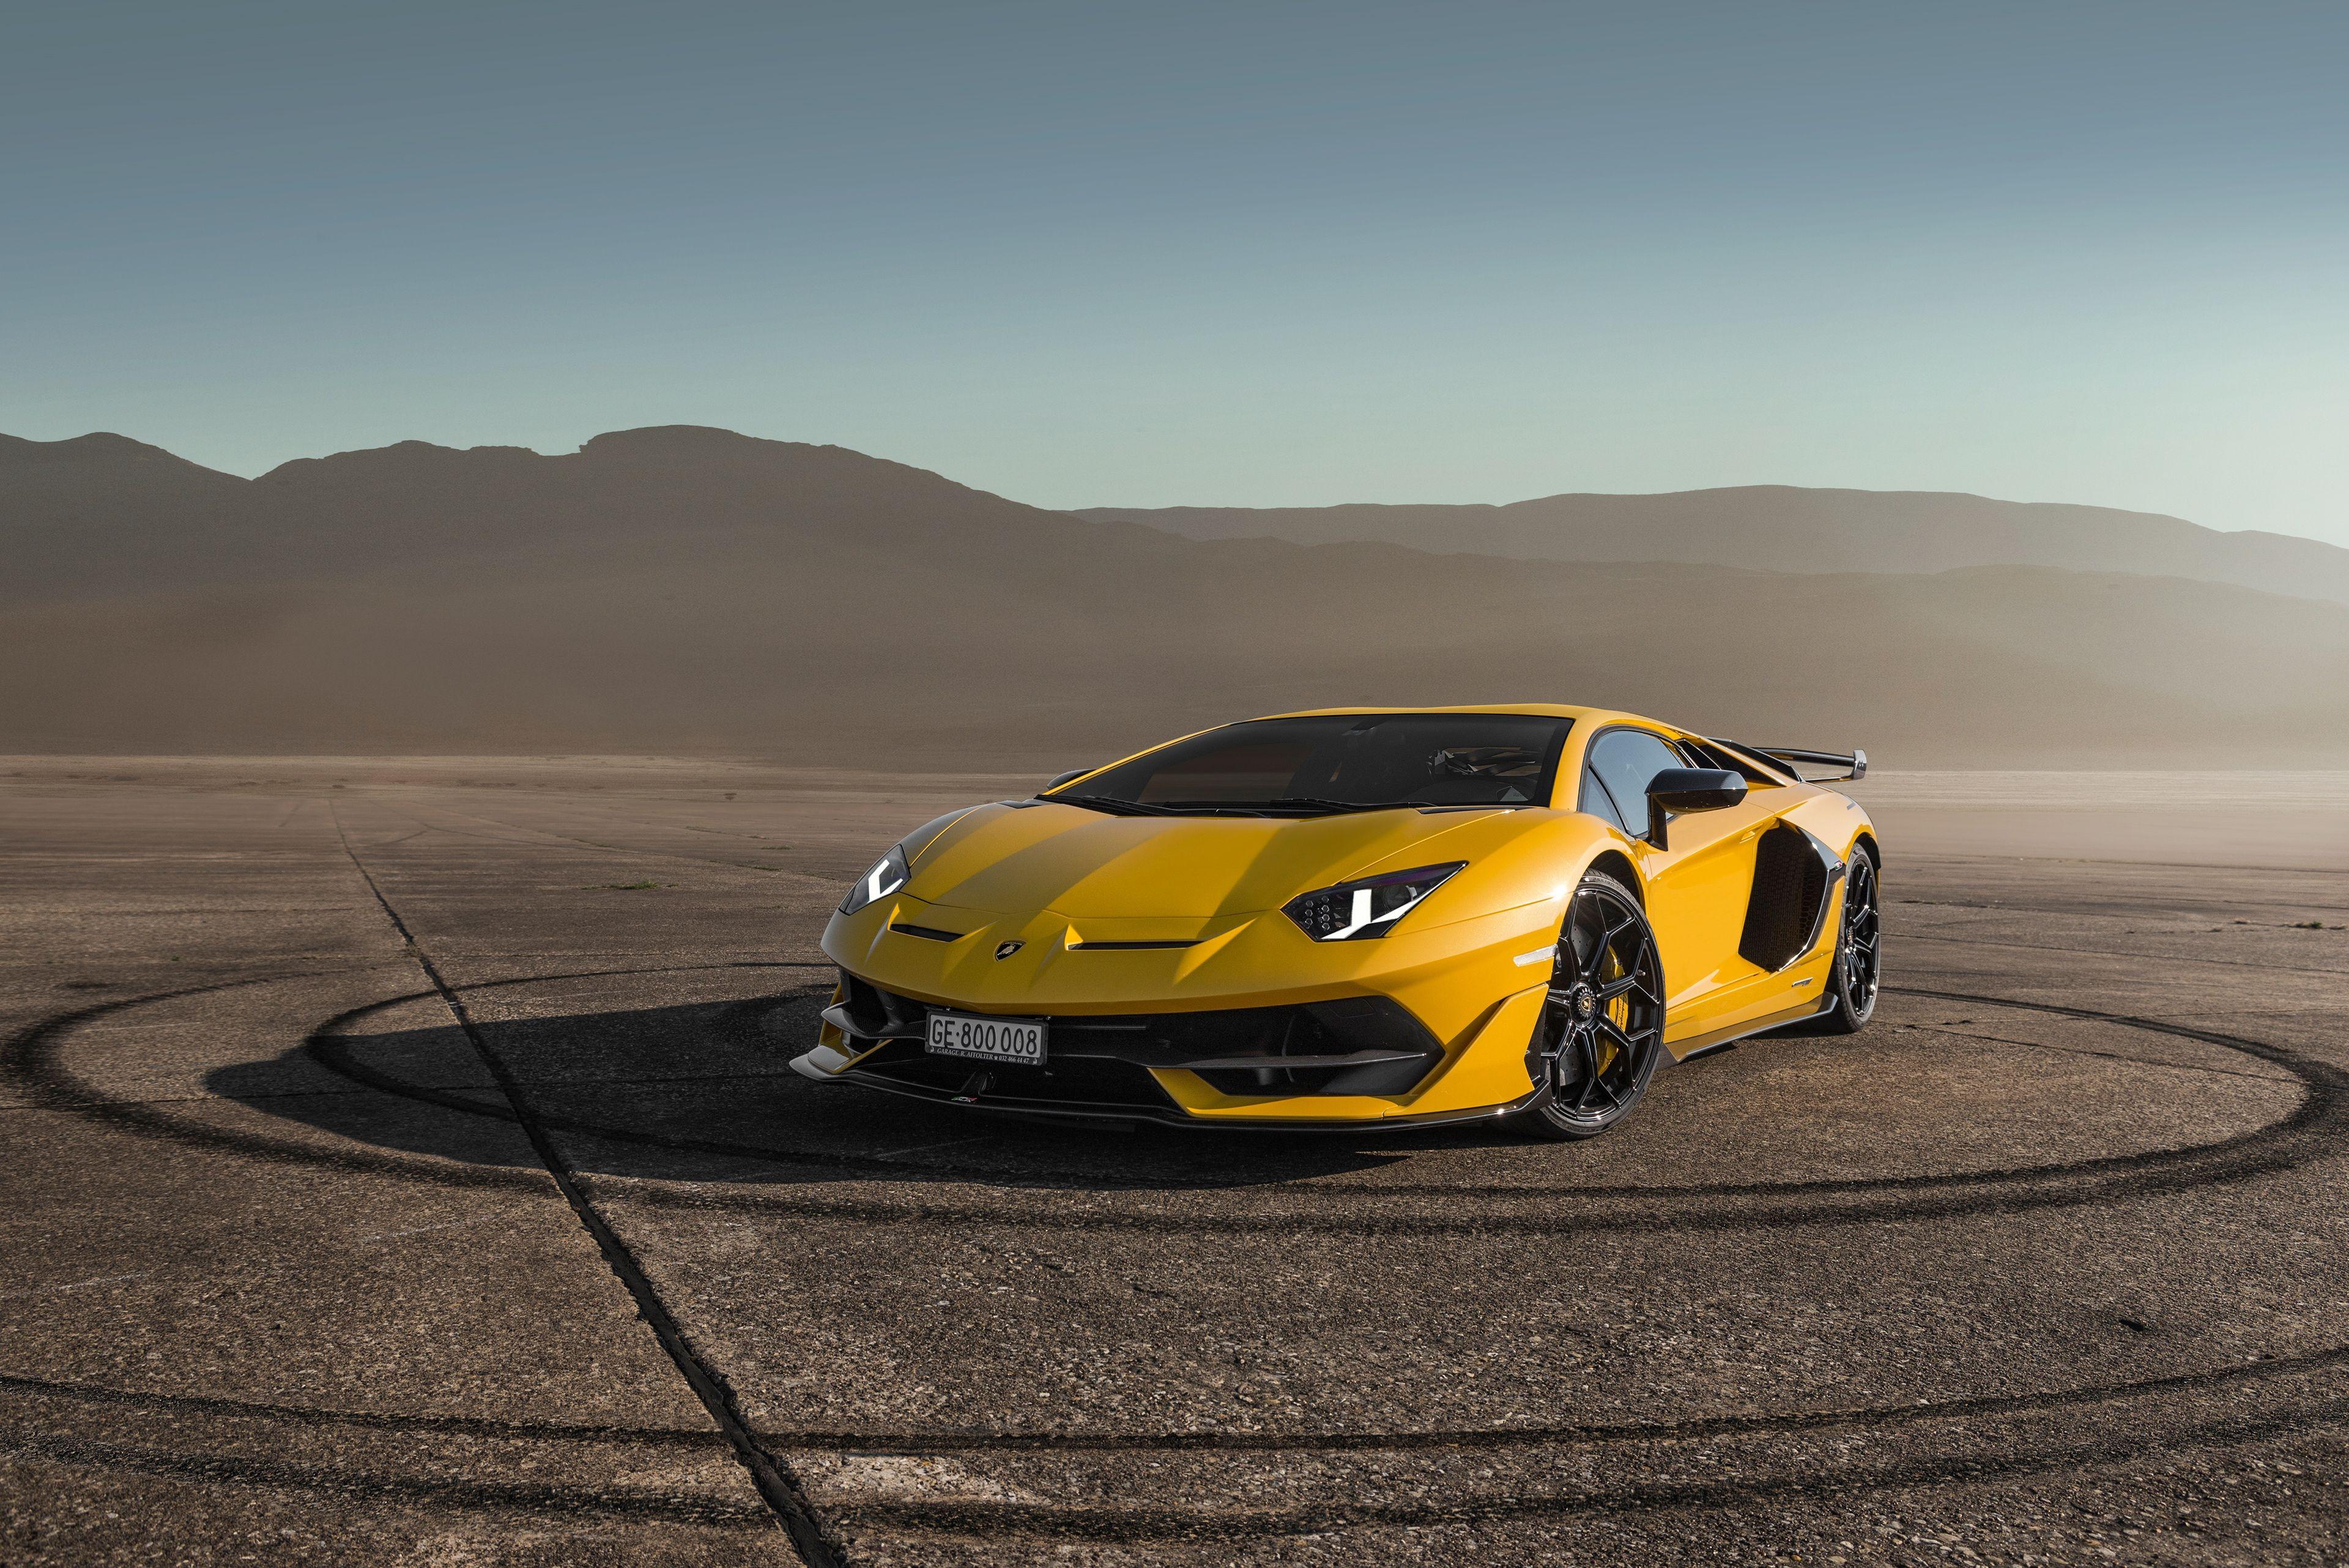 Lamborghini Miami Wallpapers - Top Free Lamborghini Miami Backgrounds ...